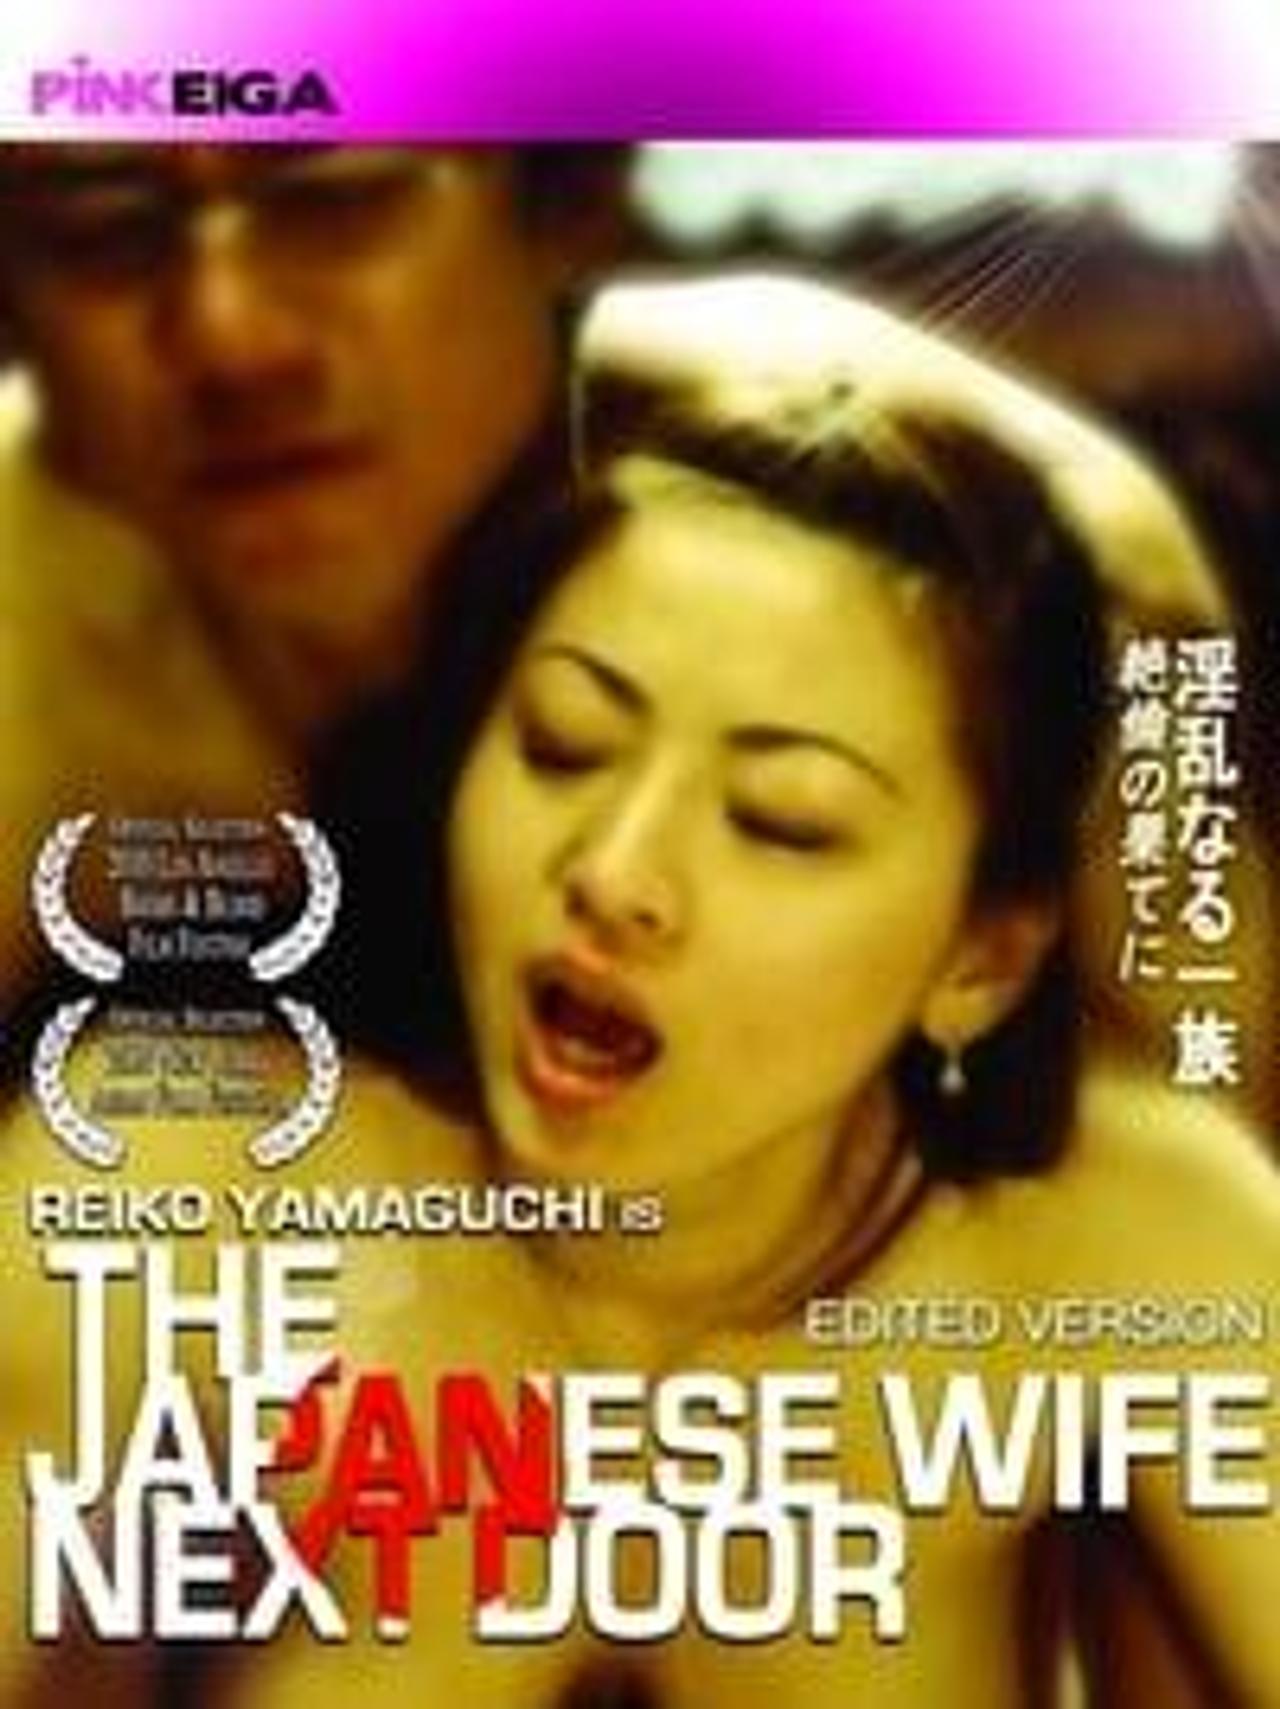 diane wisner recommends Japanese Wife Next Door